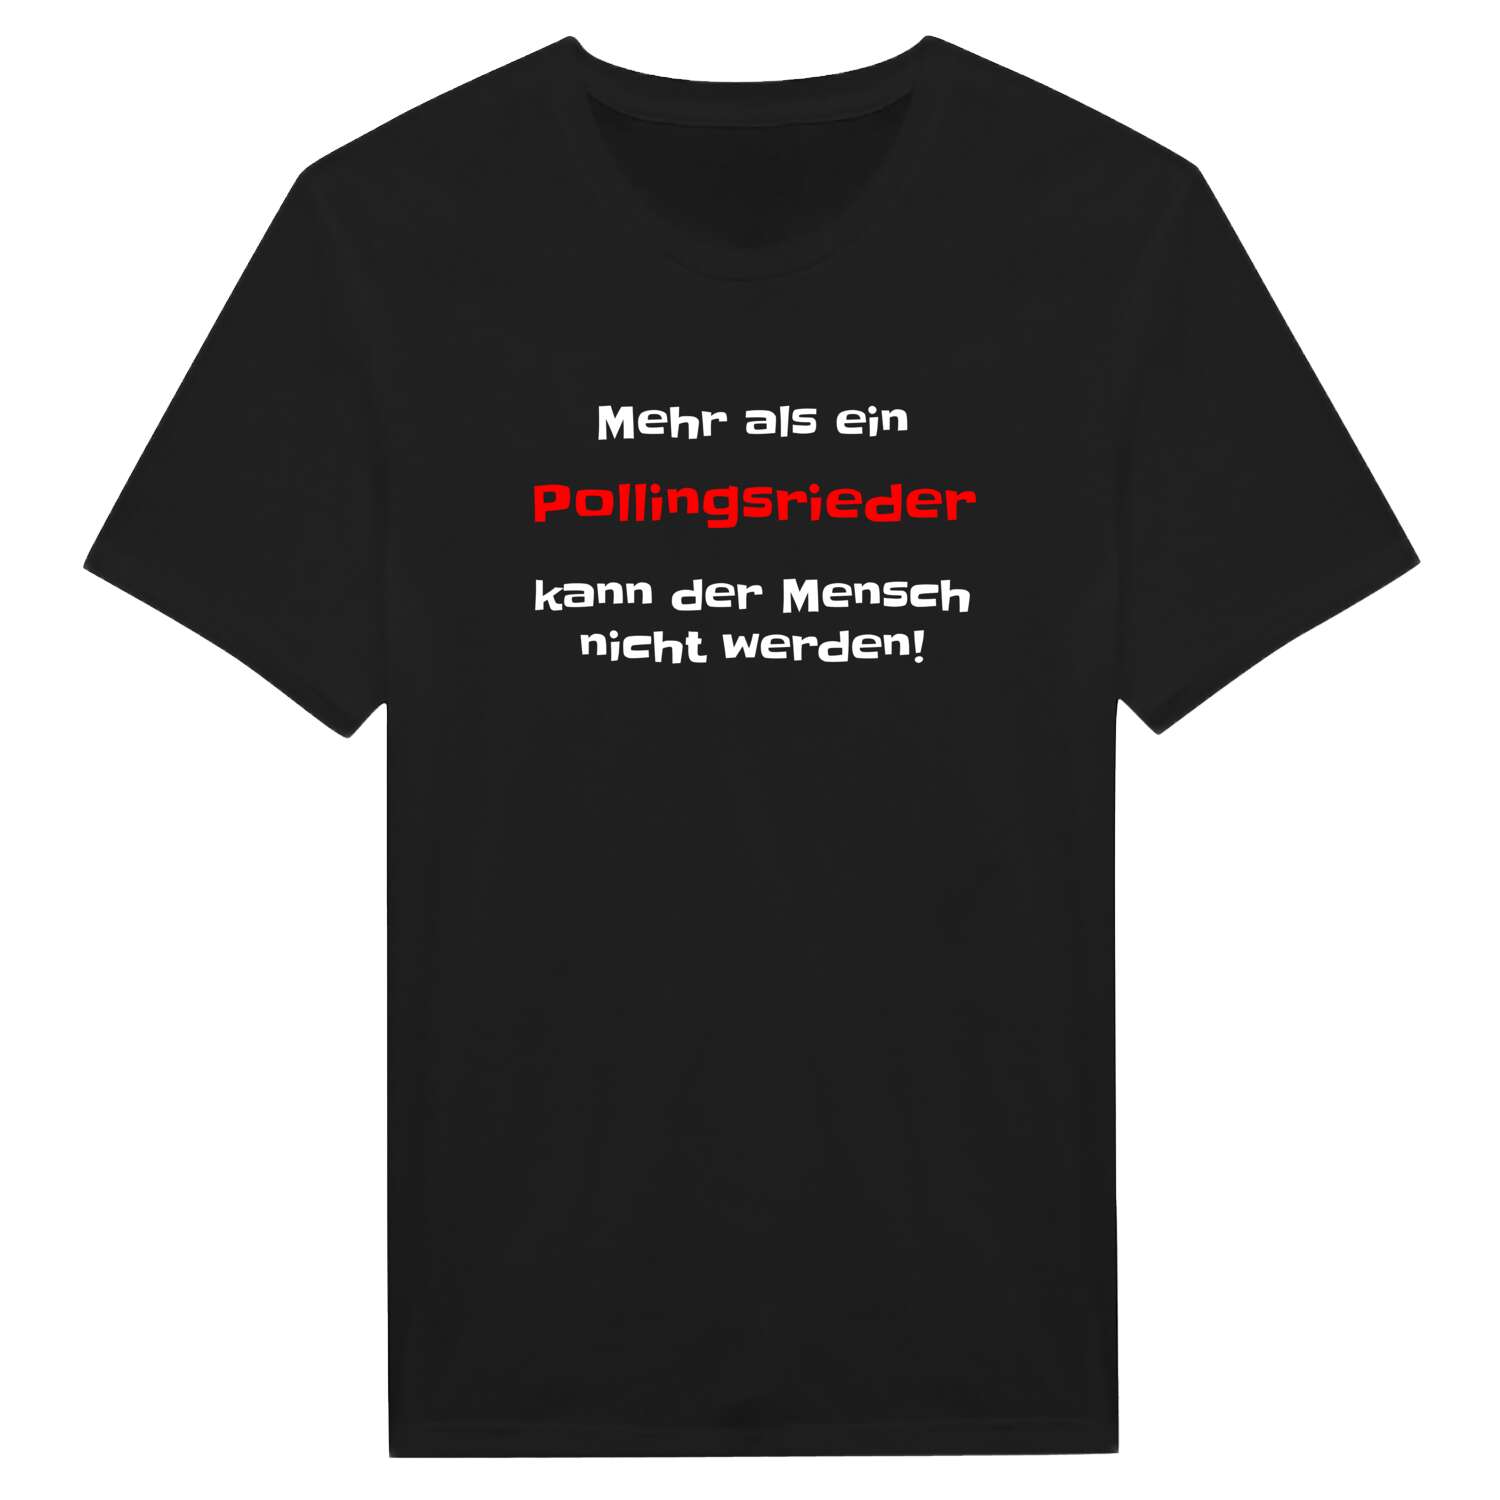 Pollingsried T-Shirt »Mehr als ein«